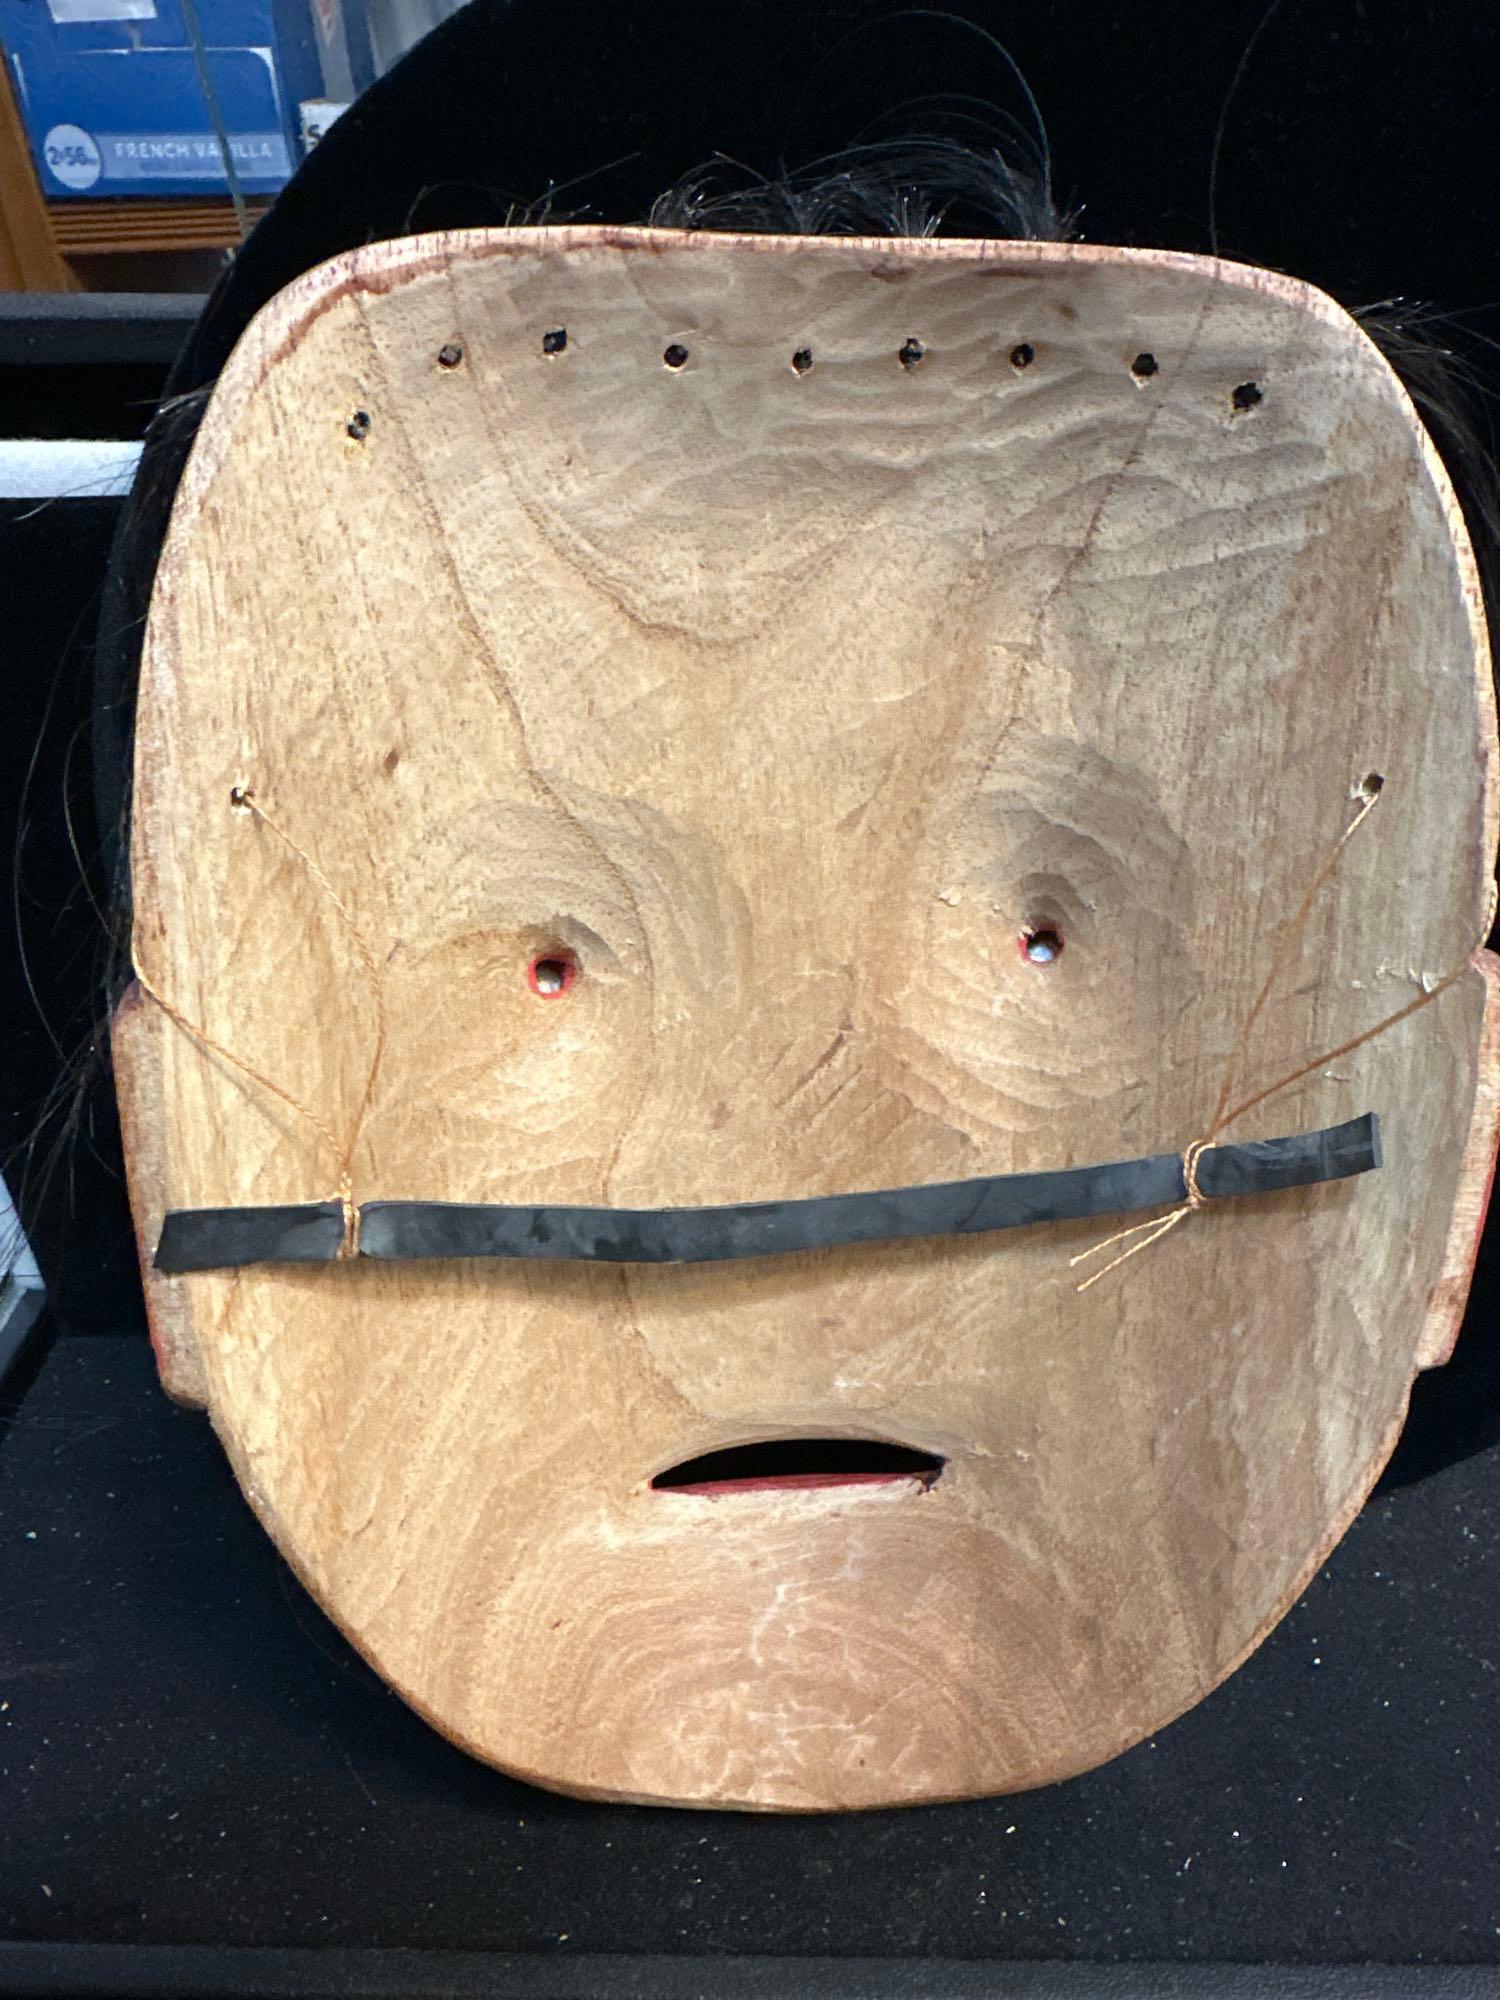 Carved wood Northwest Coast Painted Mask- Looks like Tlingit or Haida- with abalone eyes